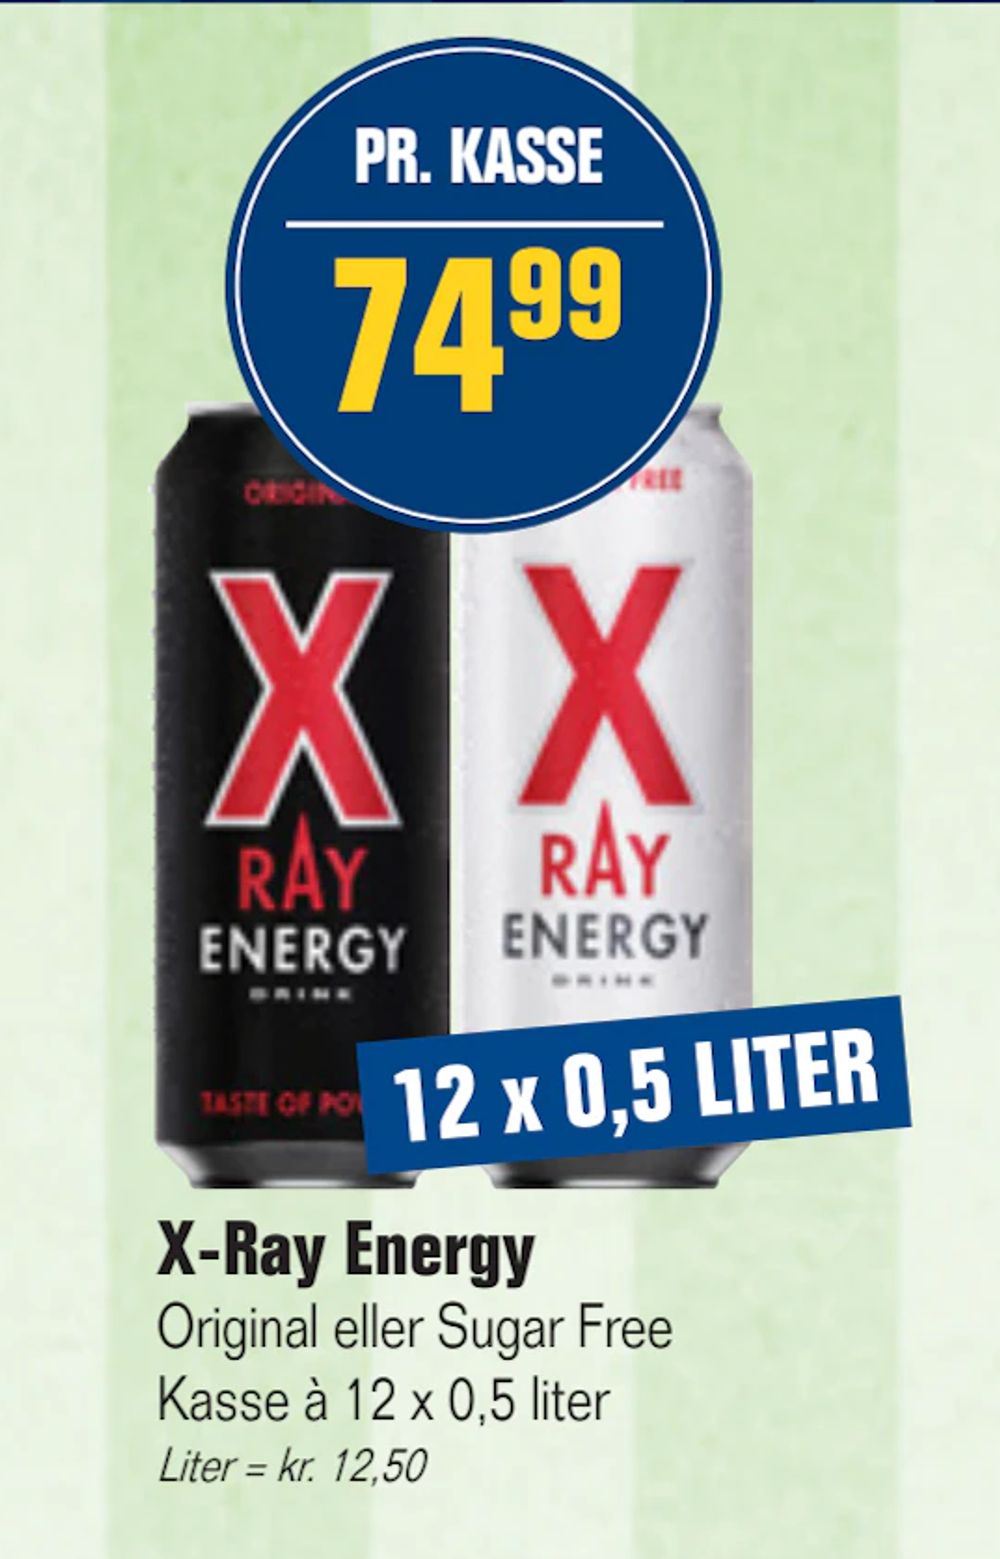 Tilbud på X-Ray Energy fra Otto Duborg til 74,99 kr.